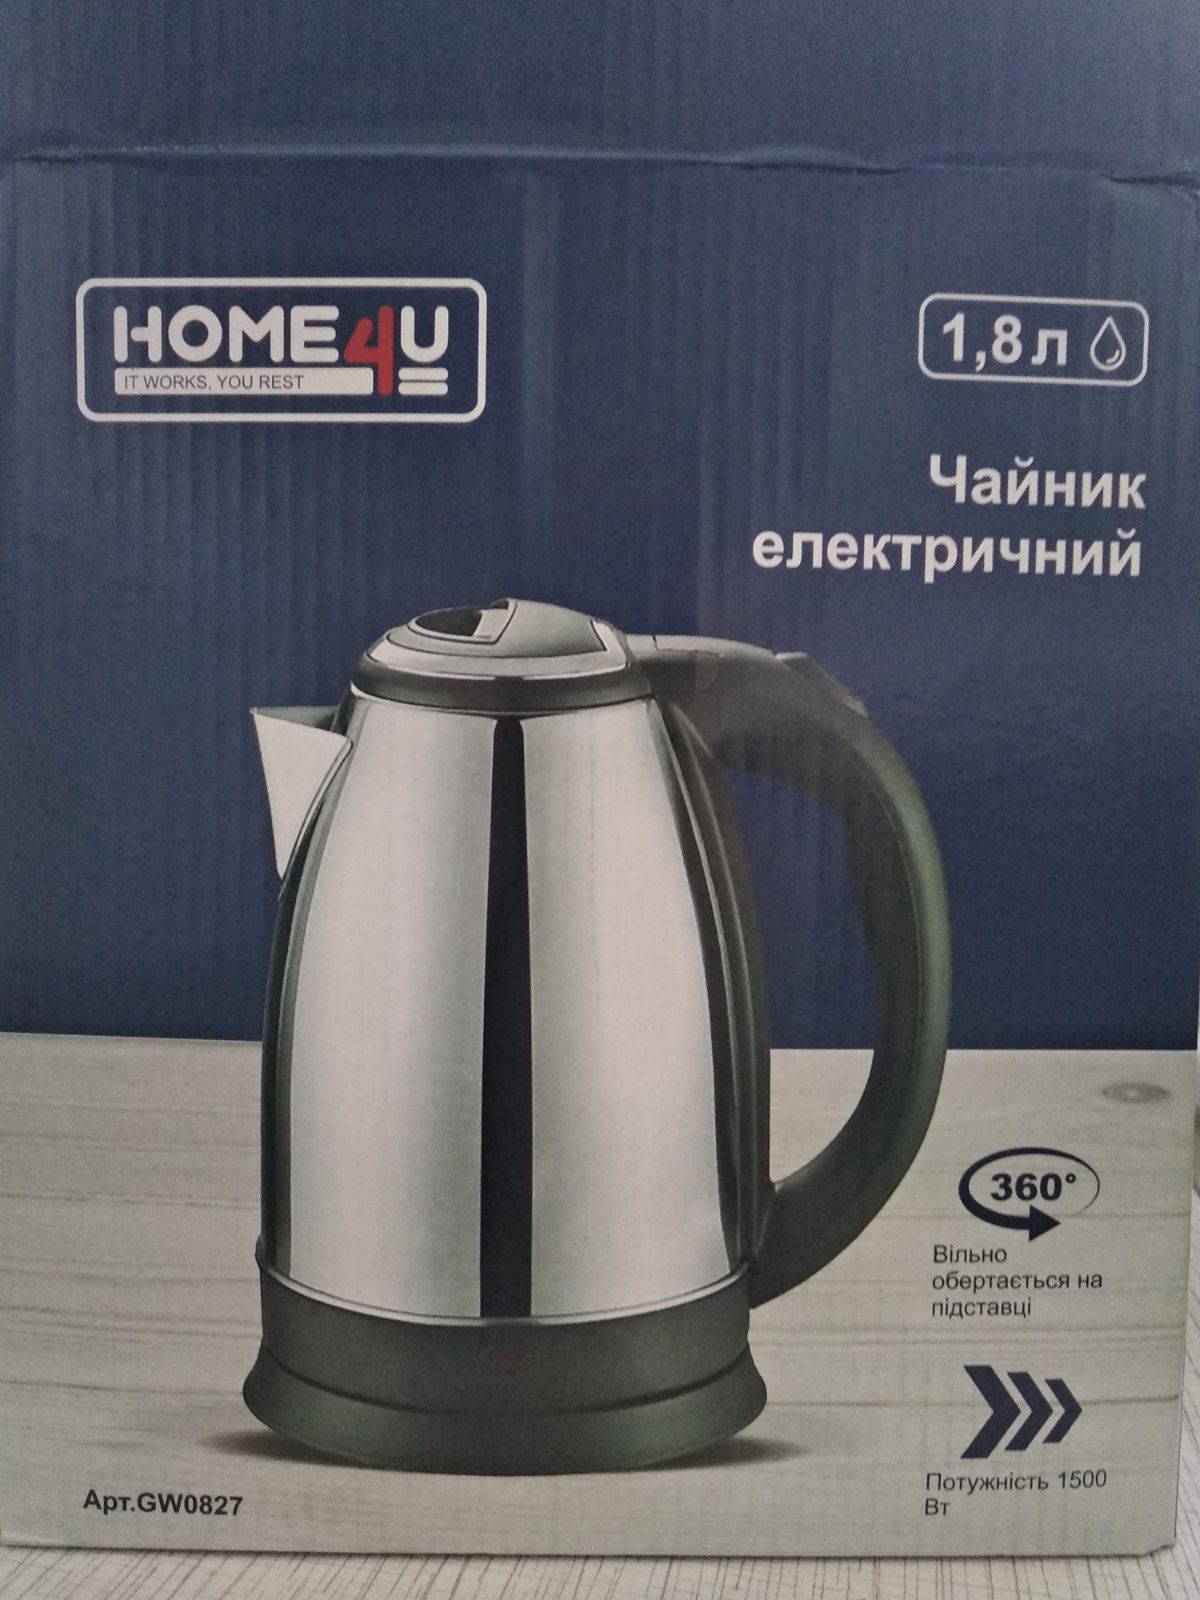 Электрический чайник home4u НОВЫЙ в коробке